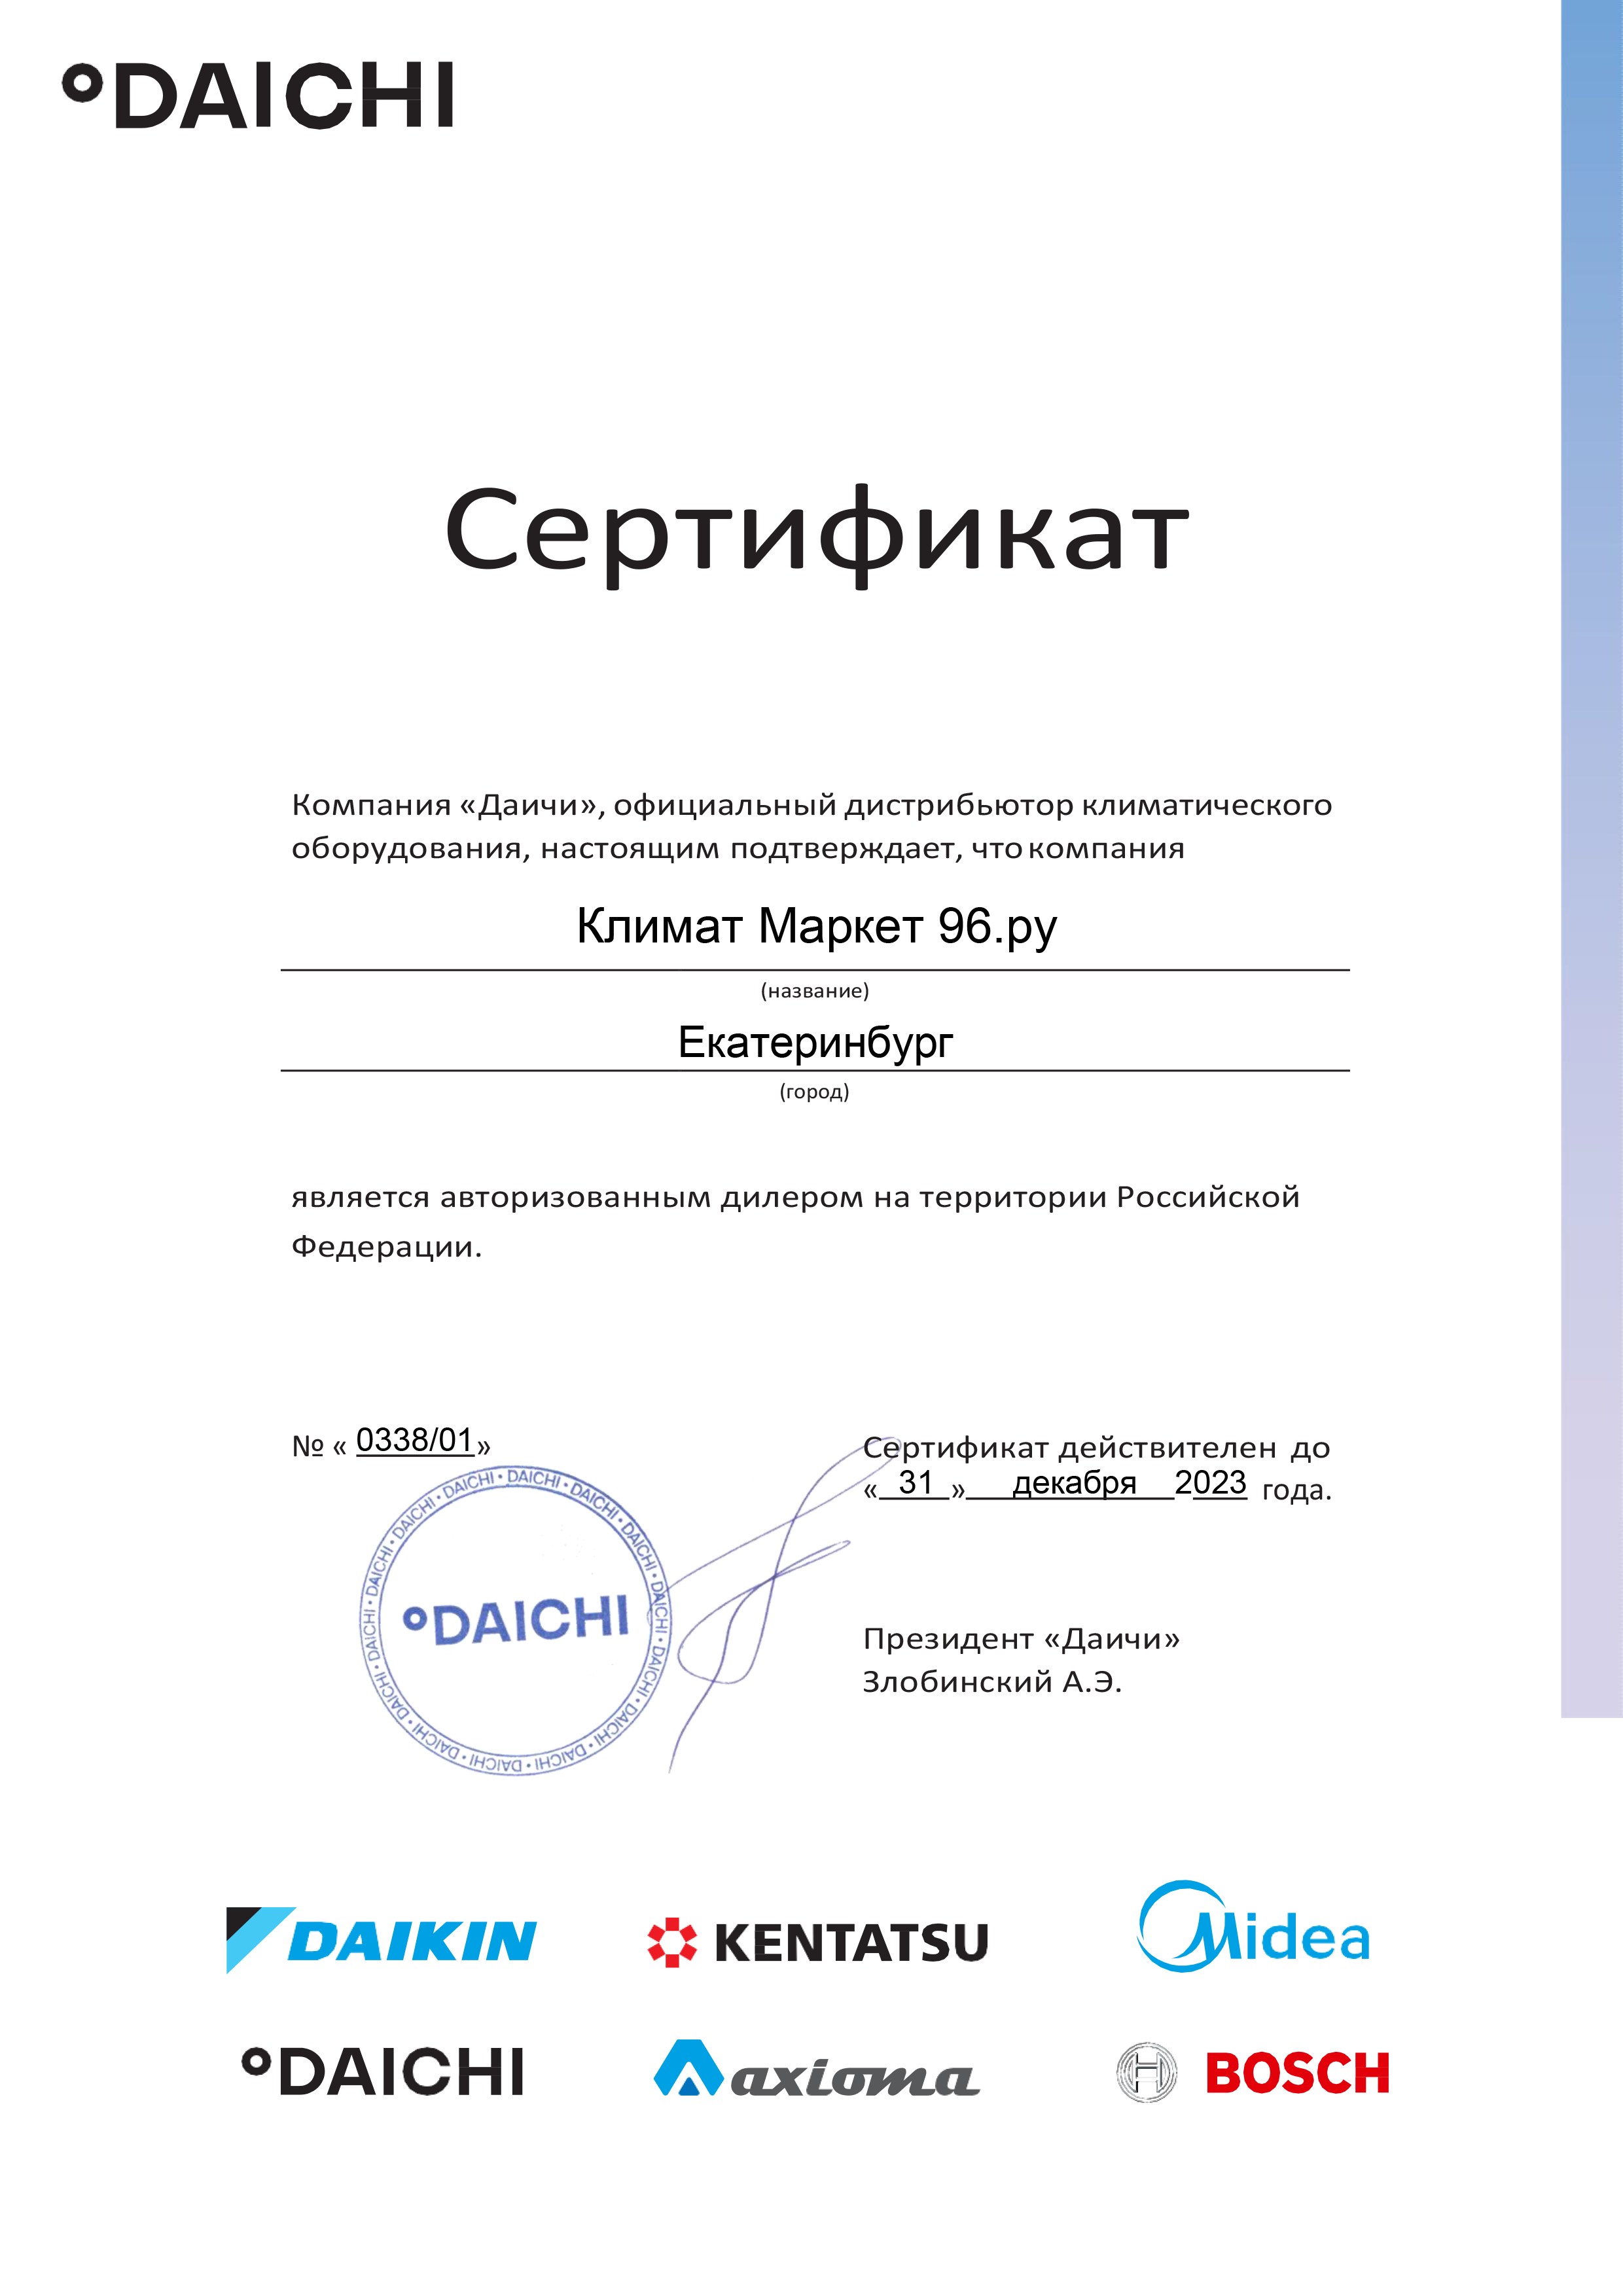 daichi-km96 Vnytrennii blok Kentatsu KMGBB35HZAN1 kypit v Krasnoyarske v internet-magazine KlimatMarket96.ry Сертификат дилера